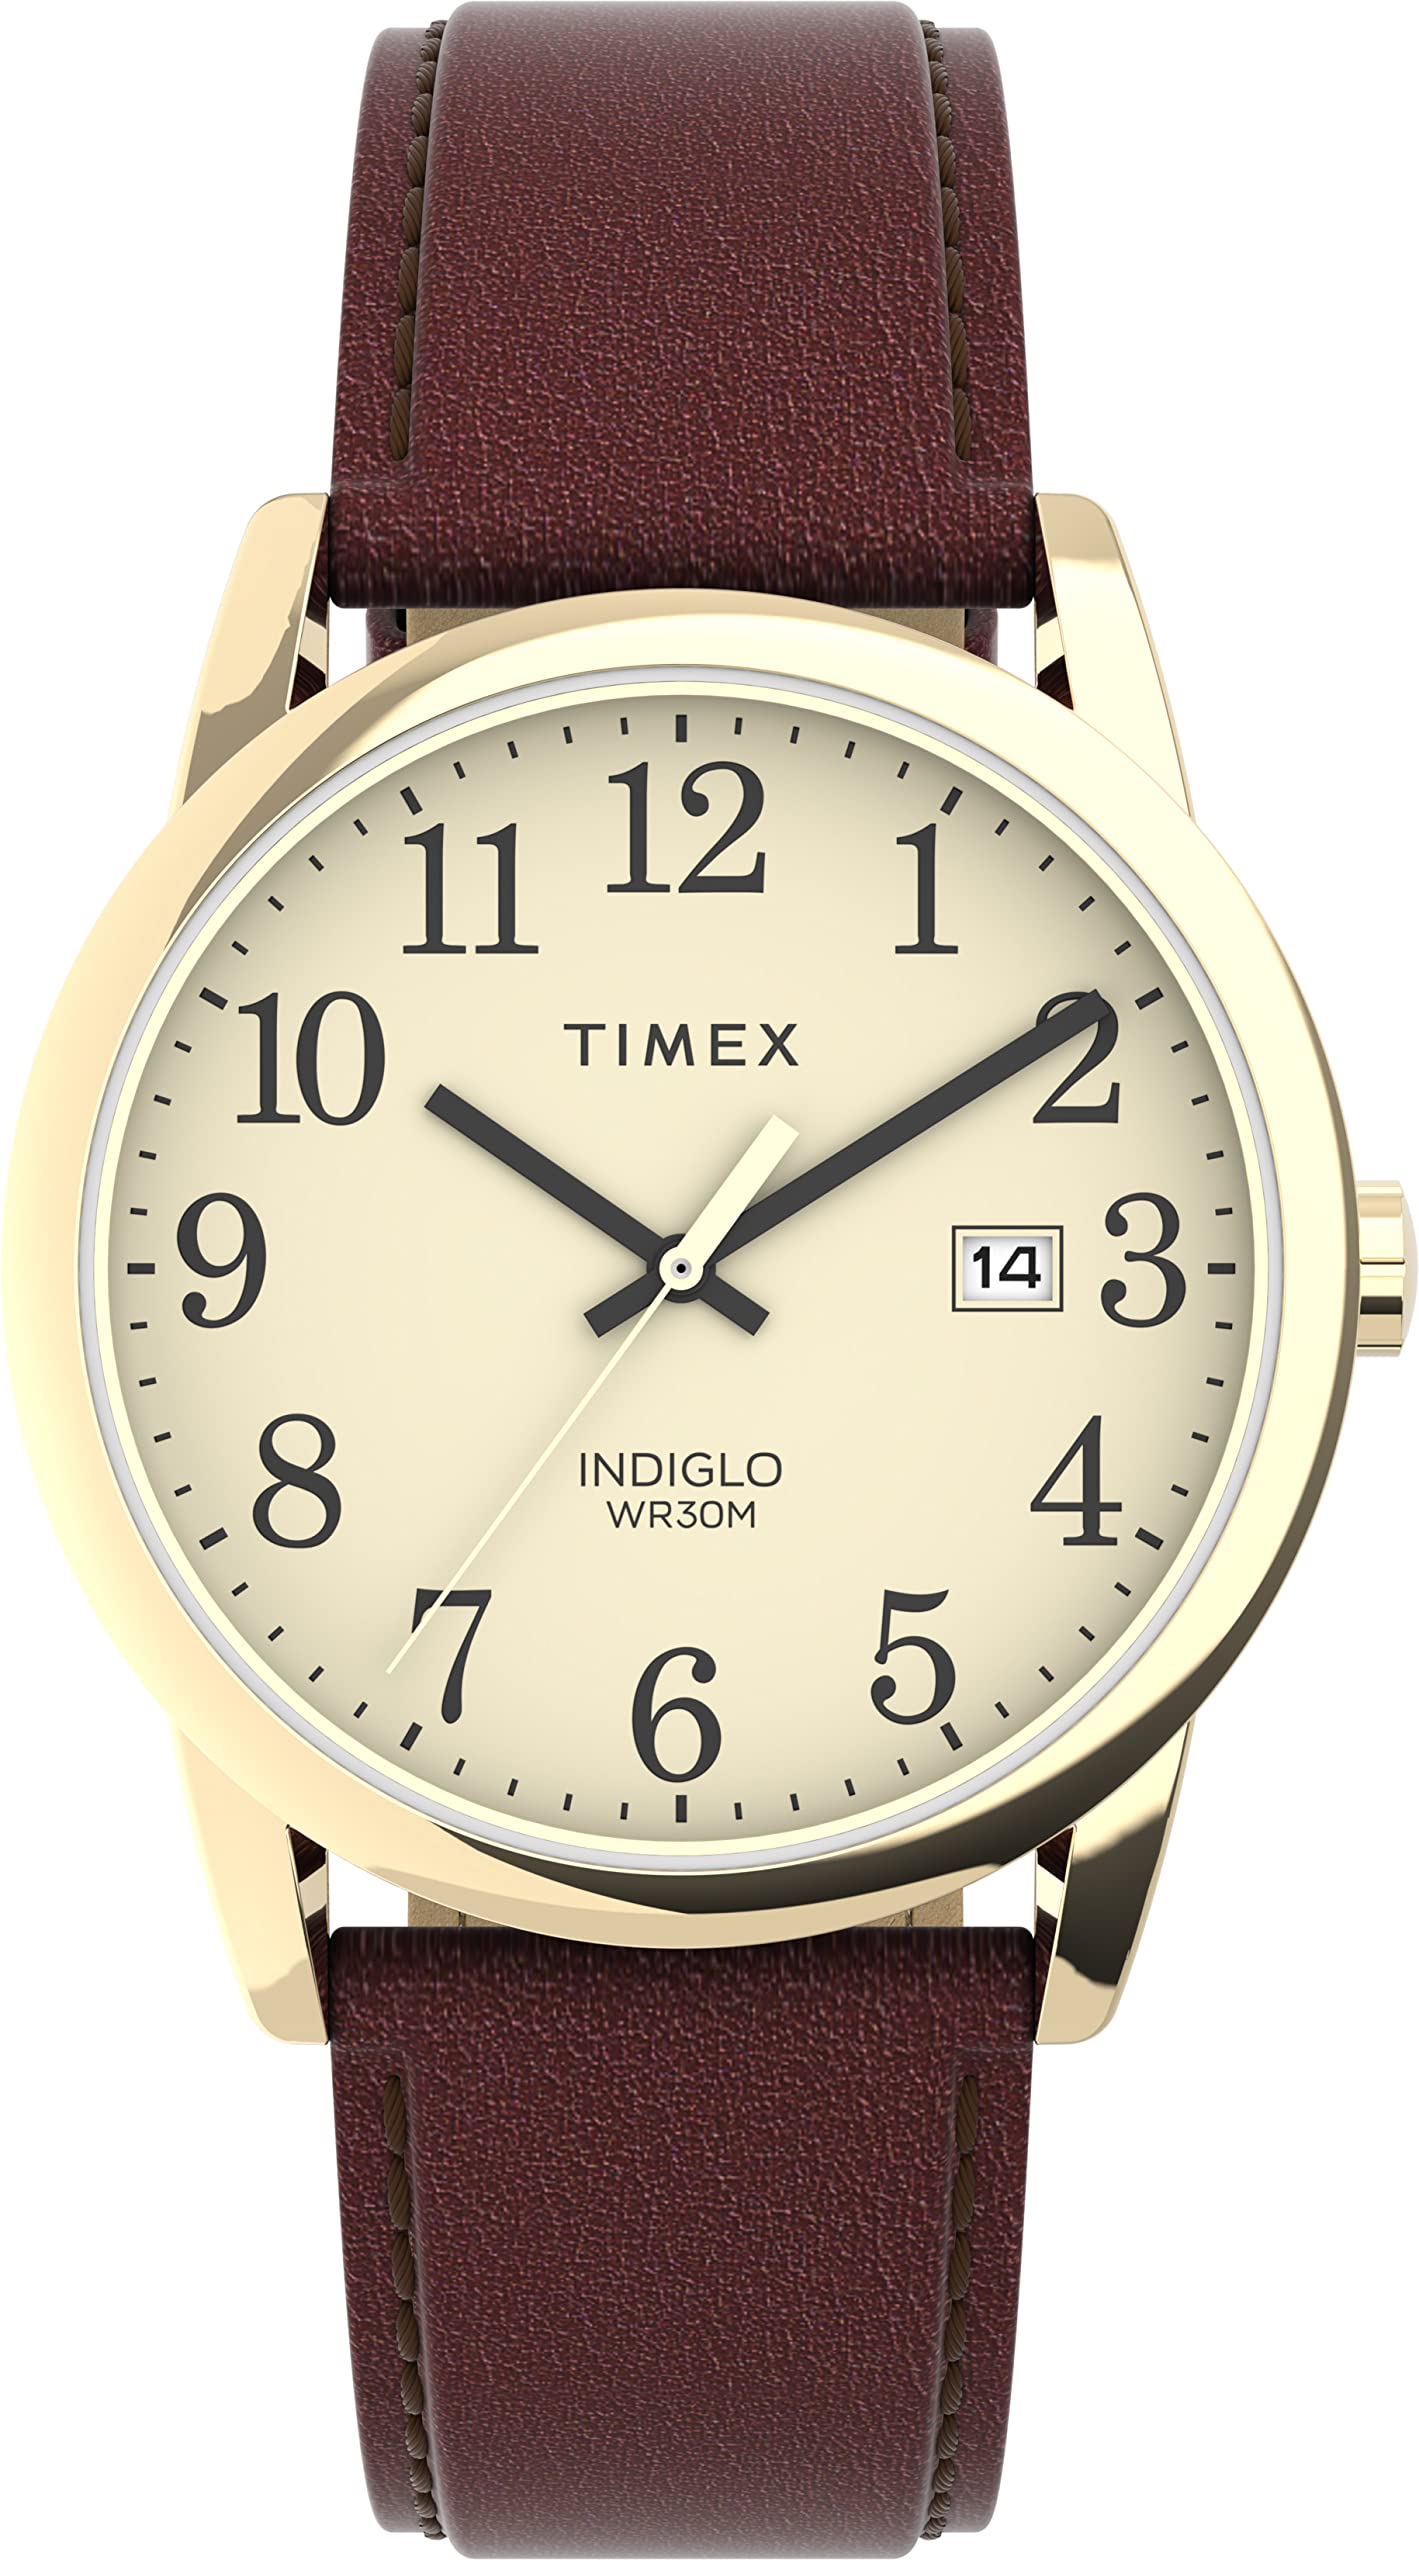 Timex Men's Easy Reader Watch